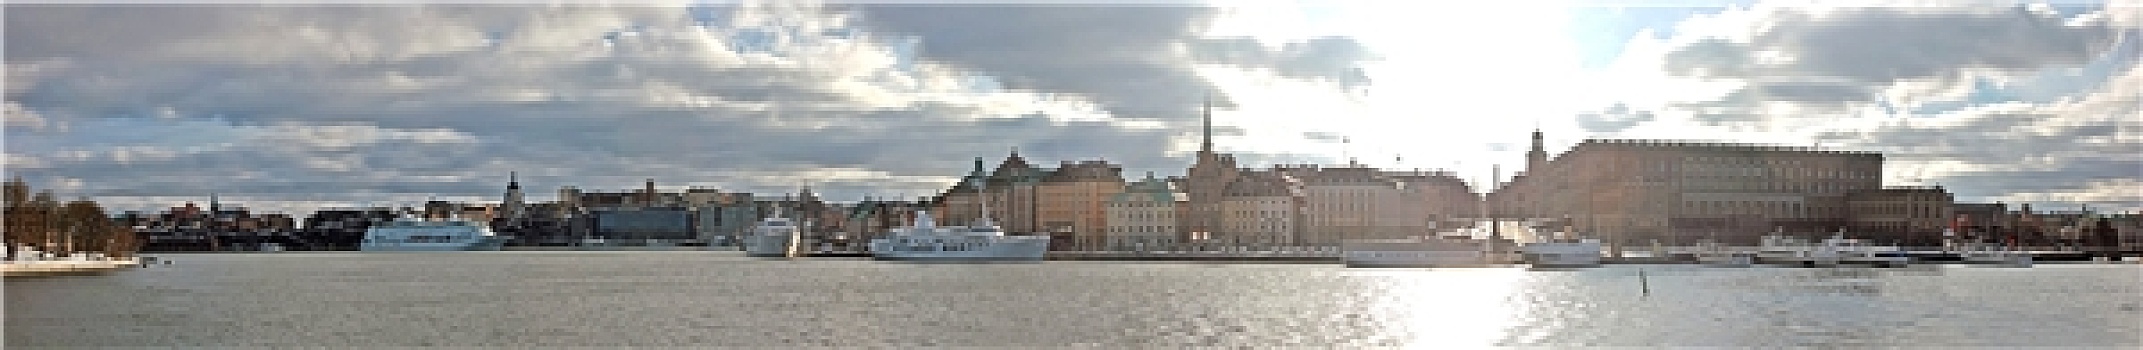 斯德哥尔摩,全景